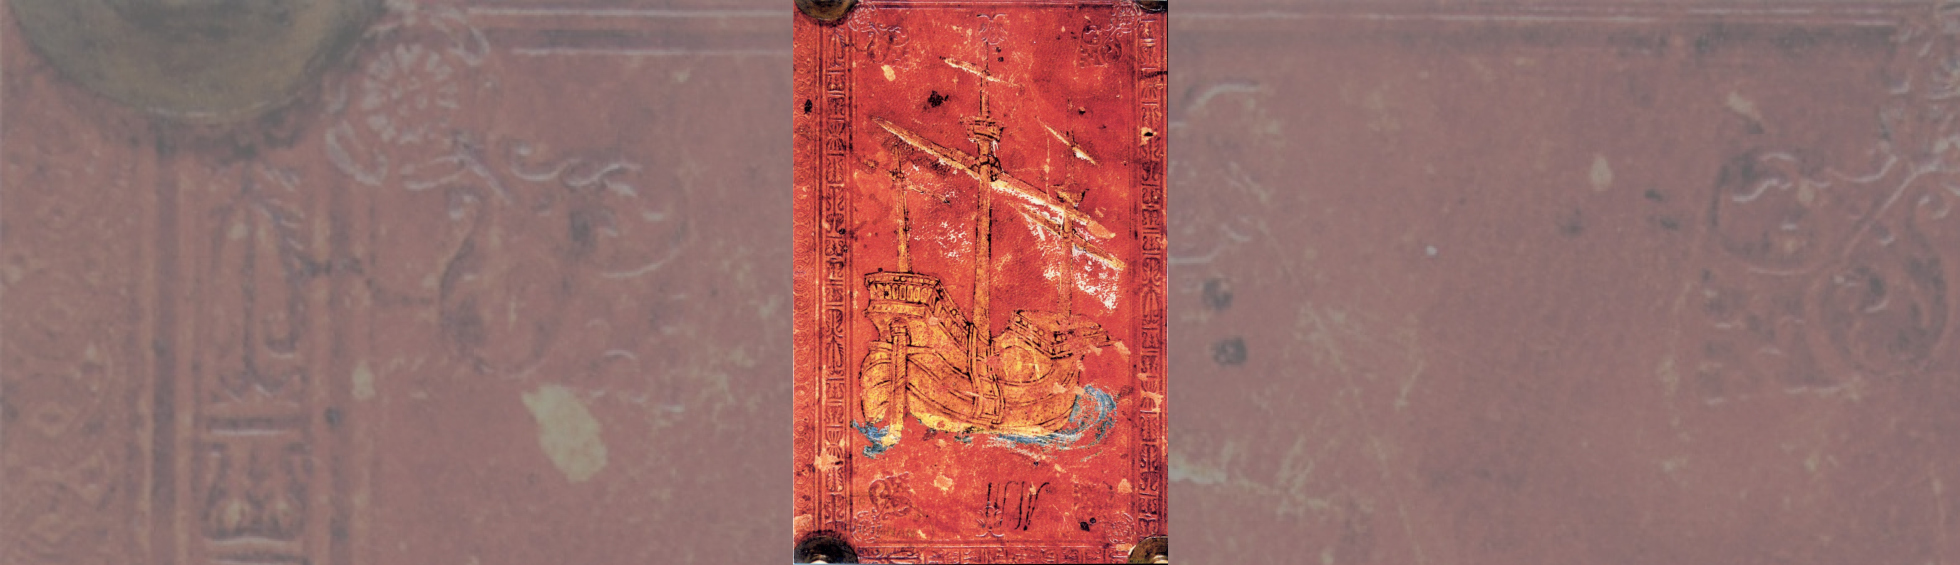 Couverture du livre des privilèges du consulat de mer : un galion à trois mats vogue sur la mer